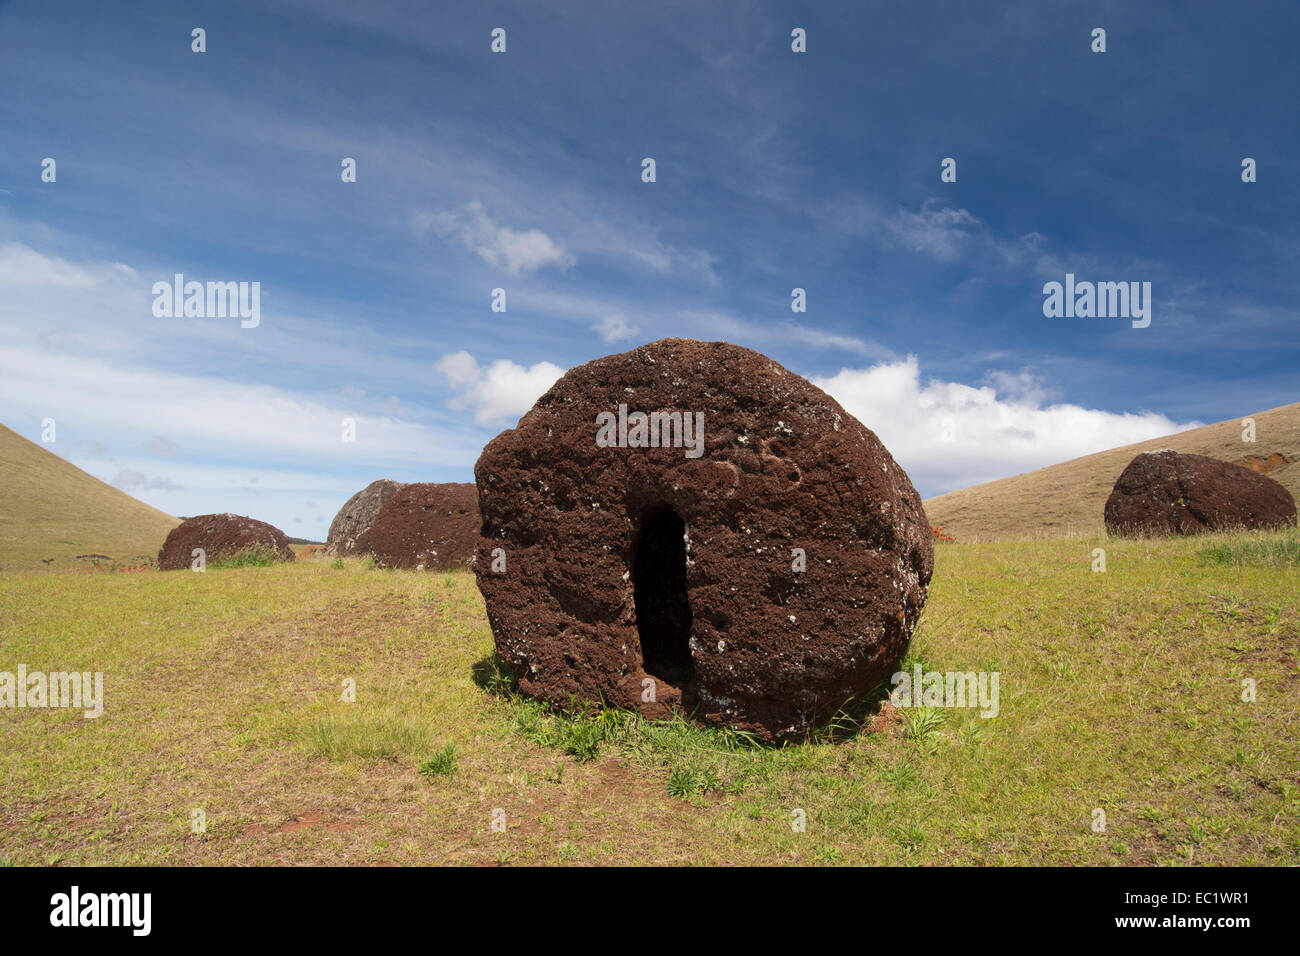 Le Chili, l'île de Pâques ou Rapa Nui. Puna Pau, Rapa Nui NP. Cratère volcanique carrière d'où on trouve des scories utilisées pour sculpter moai chapeaux. Banque D'Images